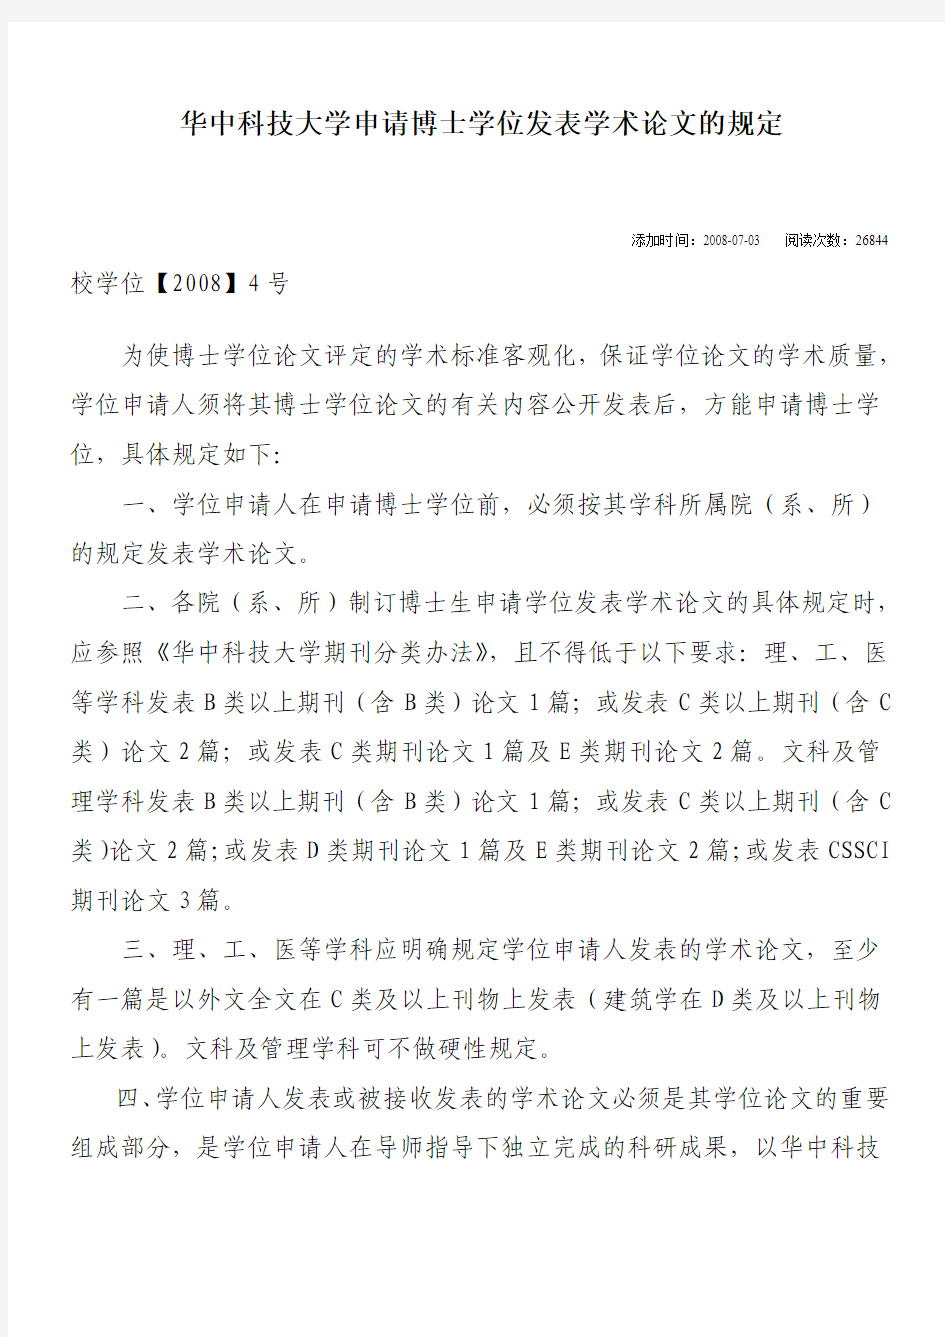 华中科技大学申请博士学位发表学术论文的规定